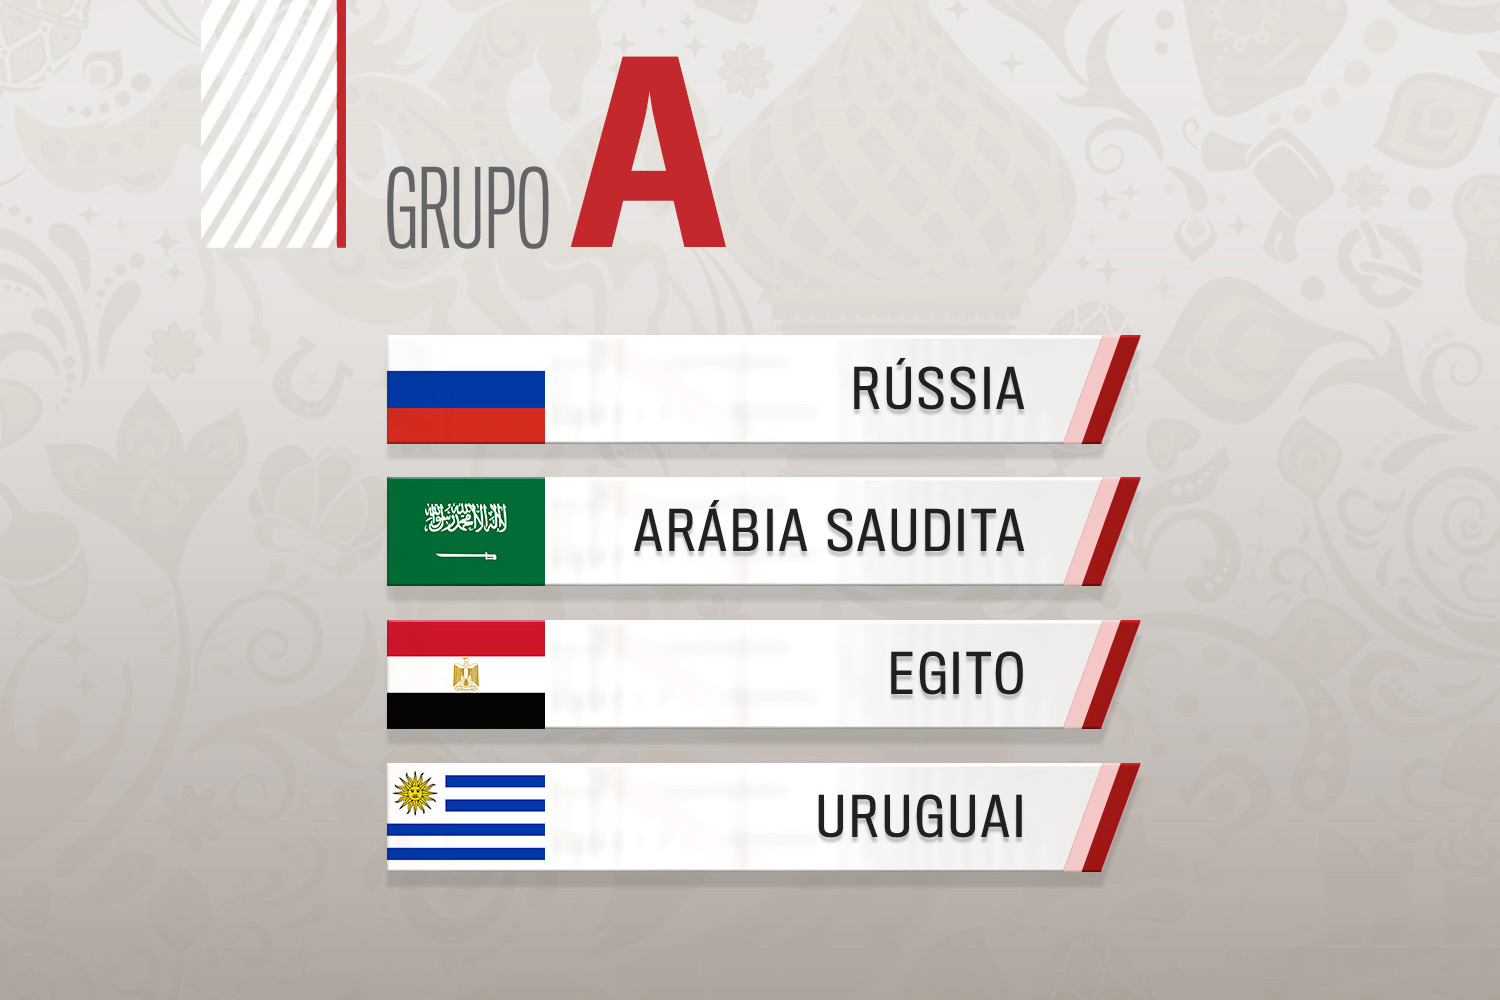 Rússia 2018: Saiba quem são as seleções do Grupo B na Copa do Mundo 2018